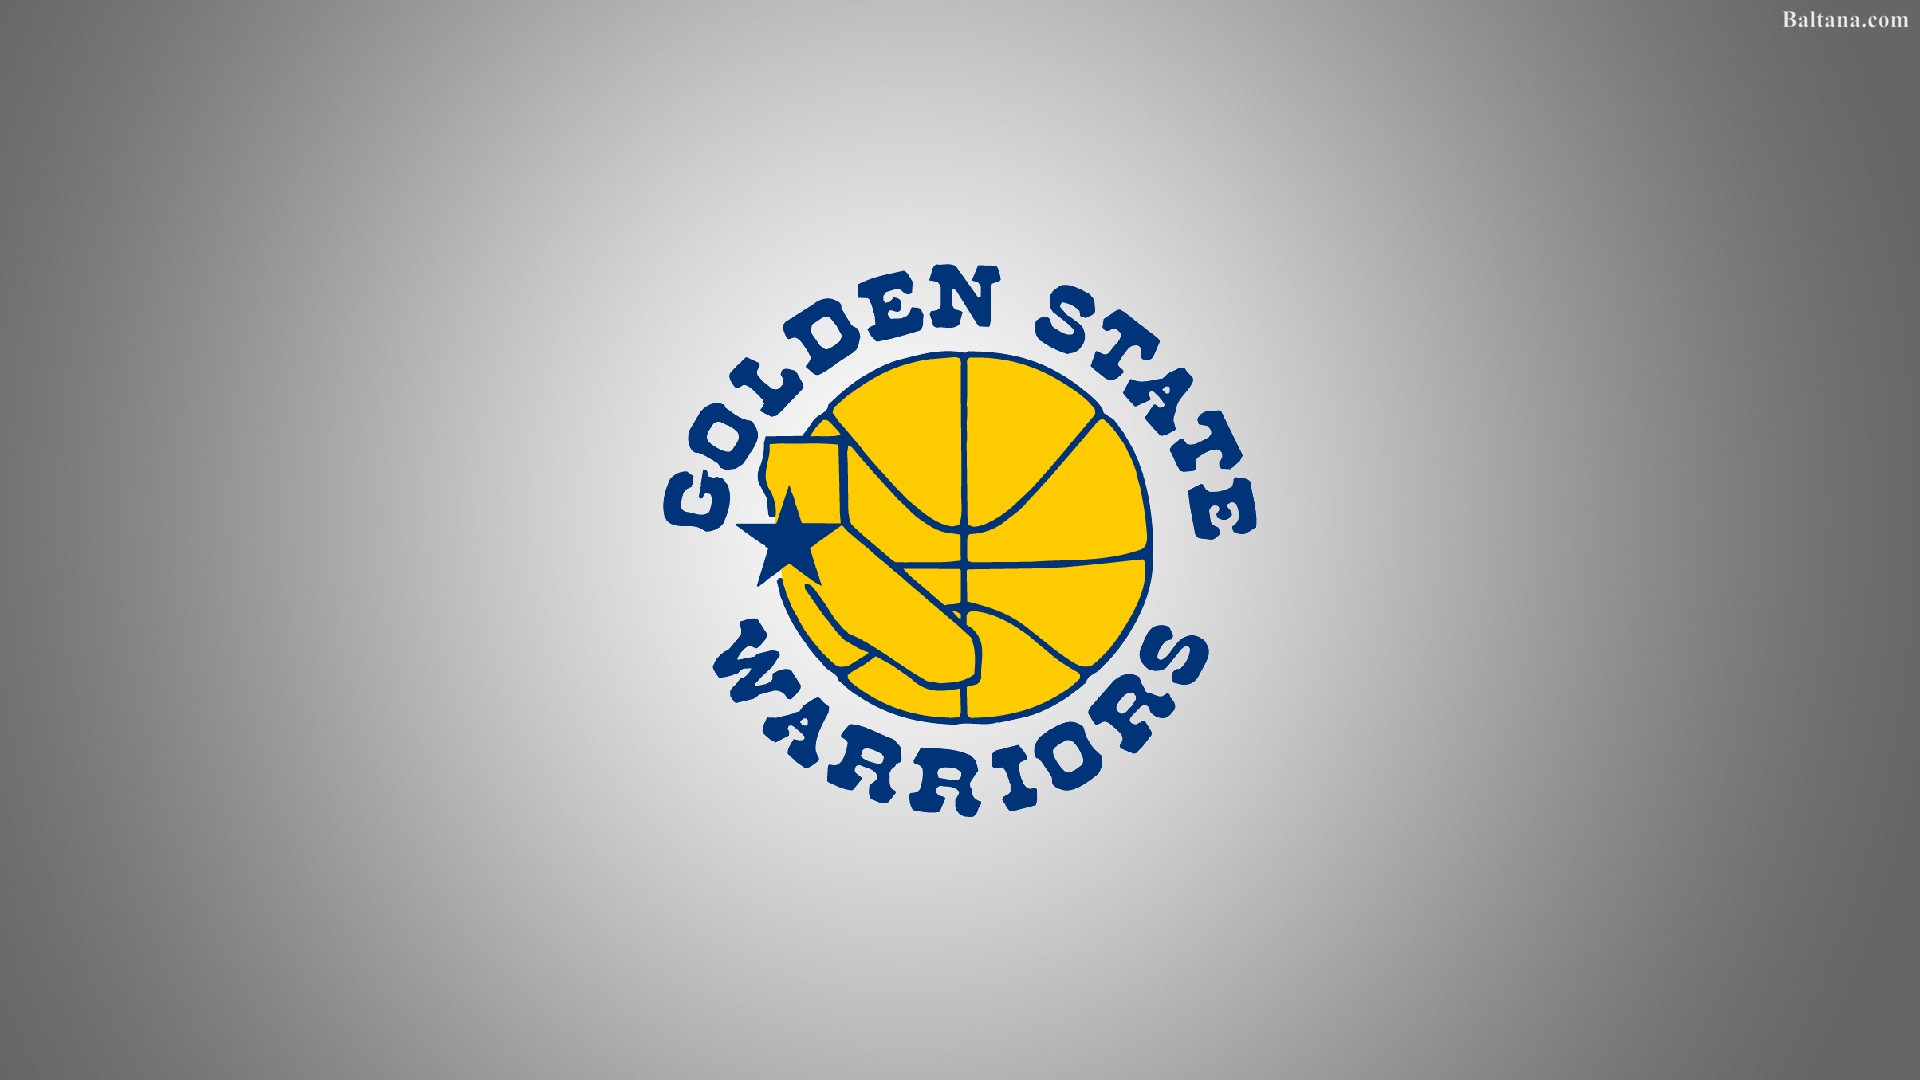 golden state warriors wallpaper,logo,emblem,yellow,graphics,font